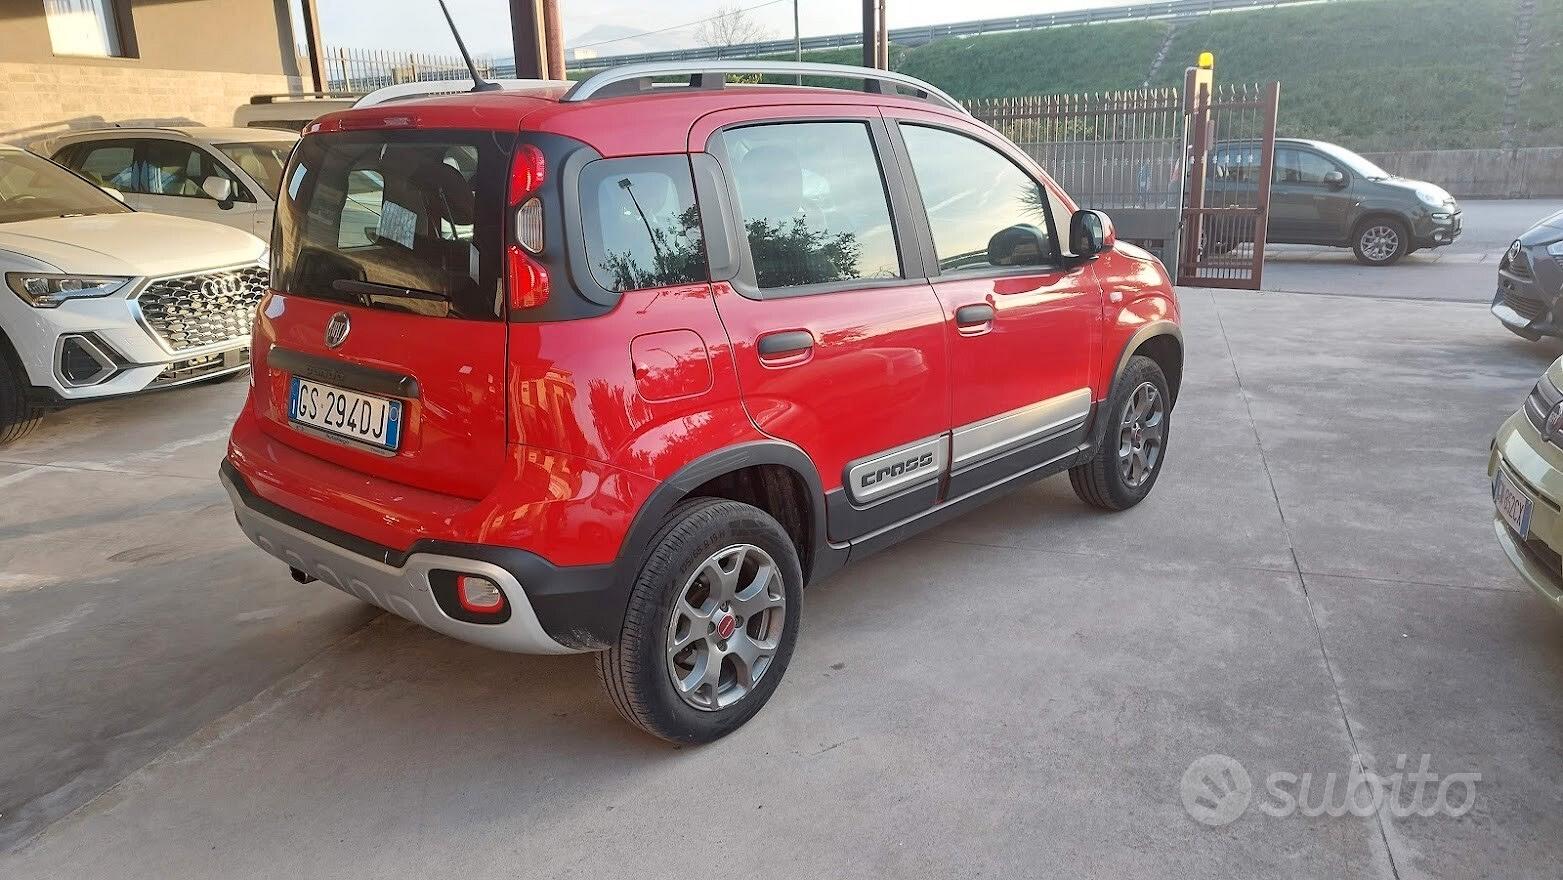 Subito - AUTO REGA - Fiat Panda 0.9 TwinAir Turbo S&S 4x4 City Cross - Auto  In vendita a Napoli